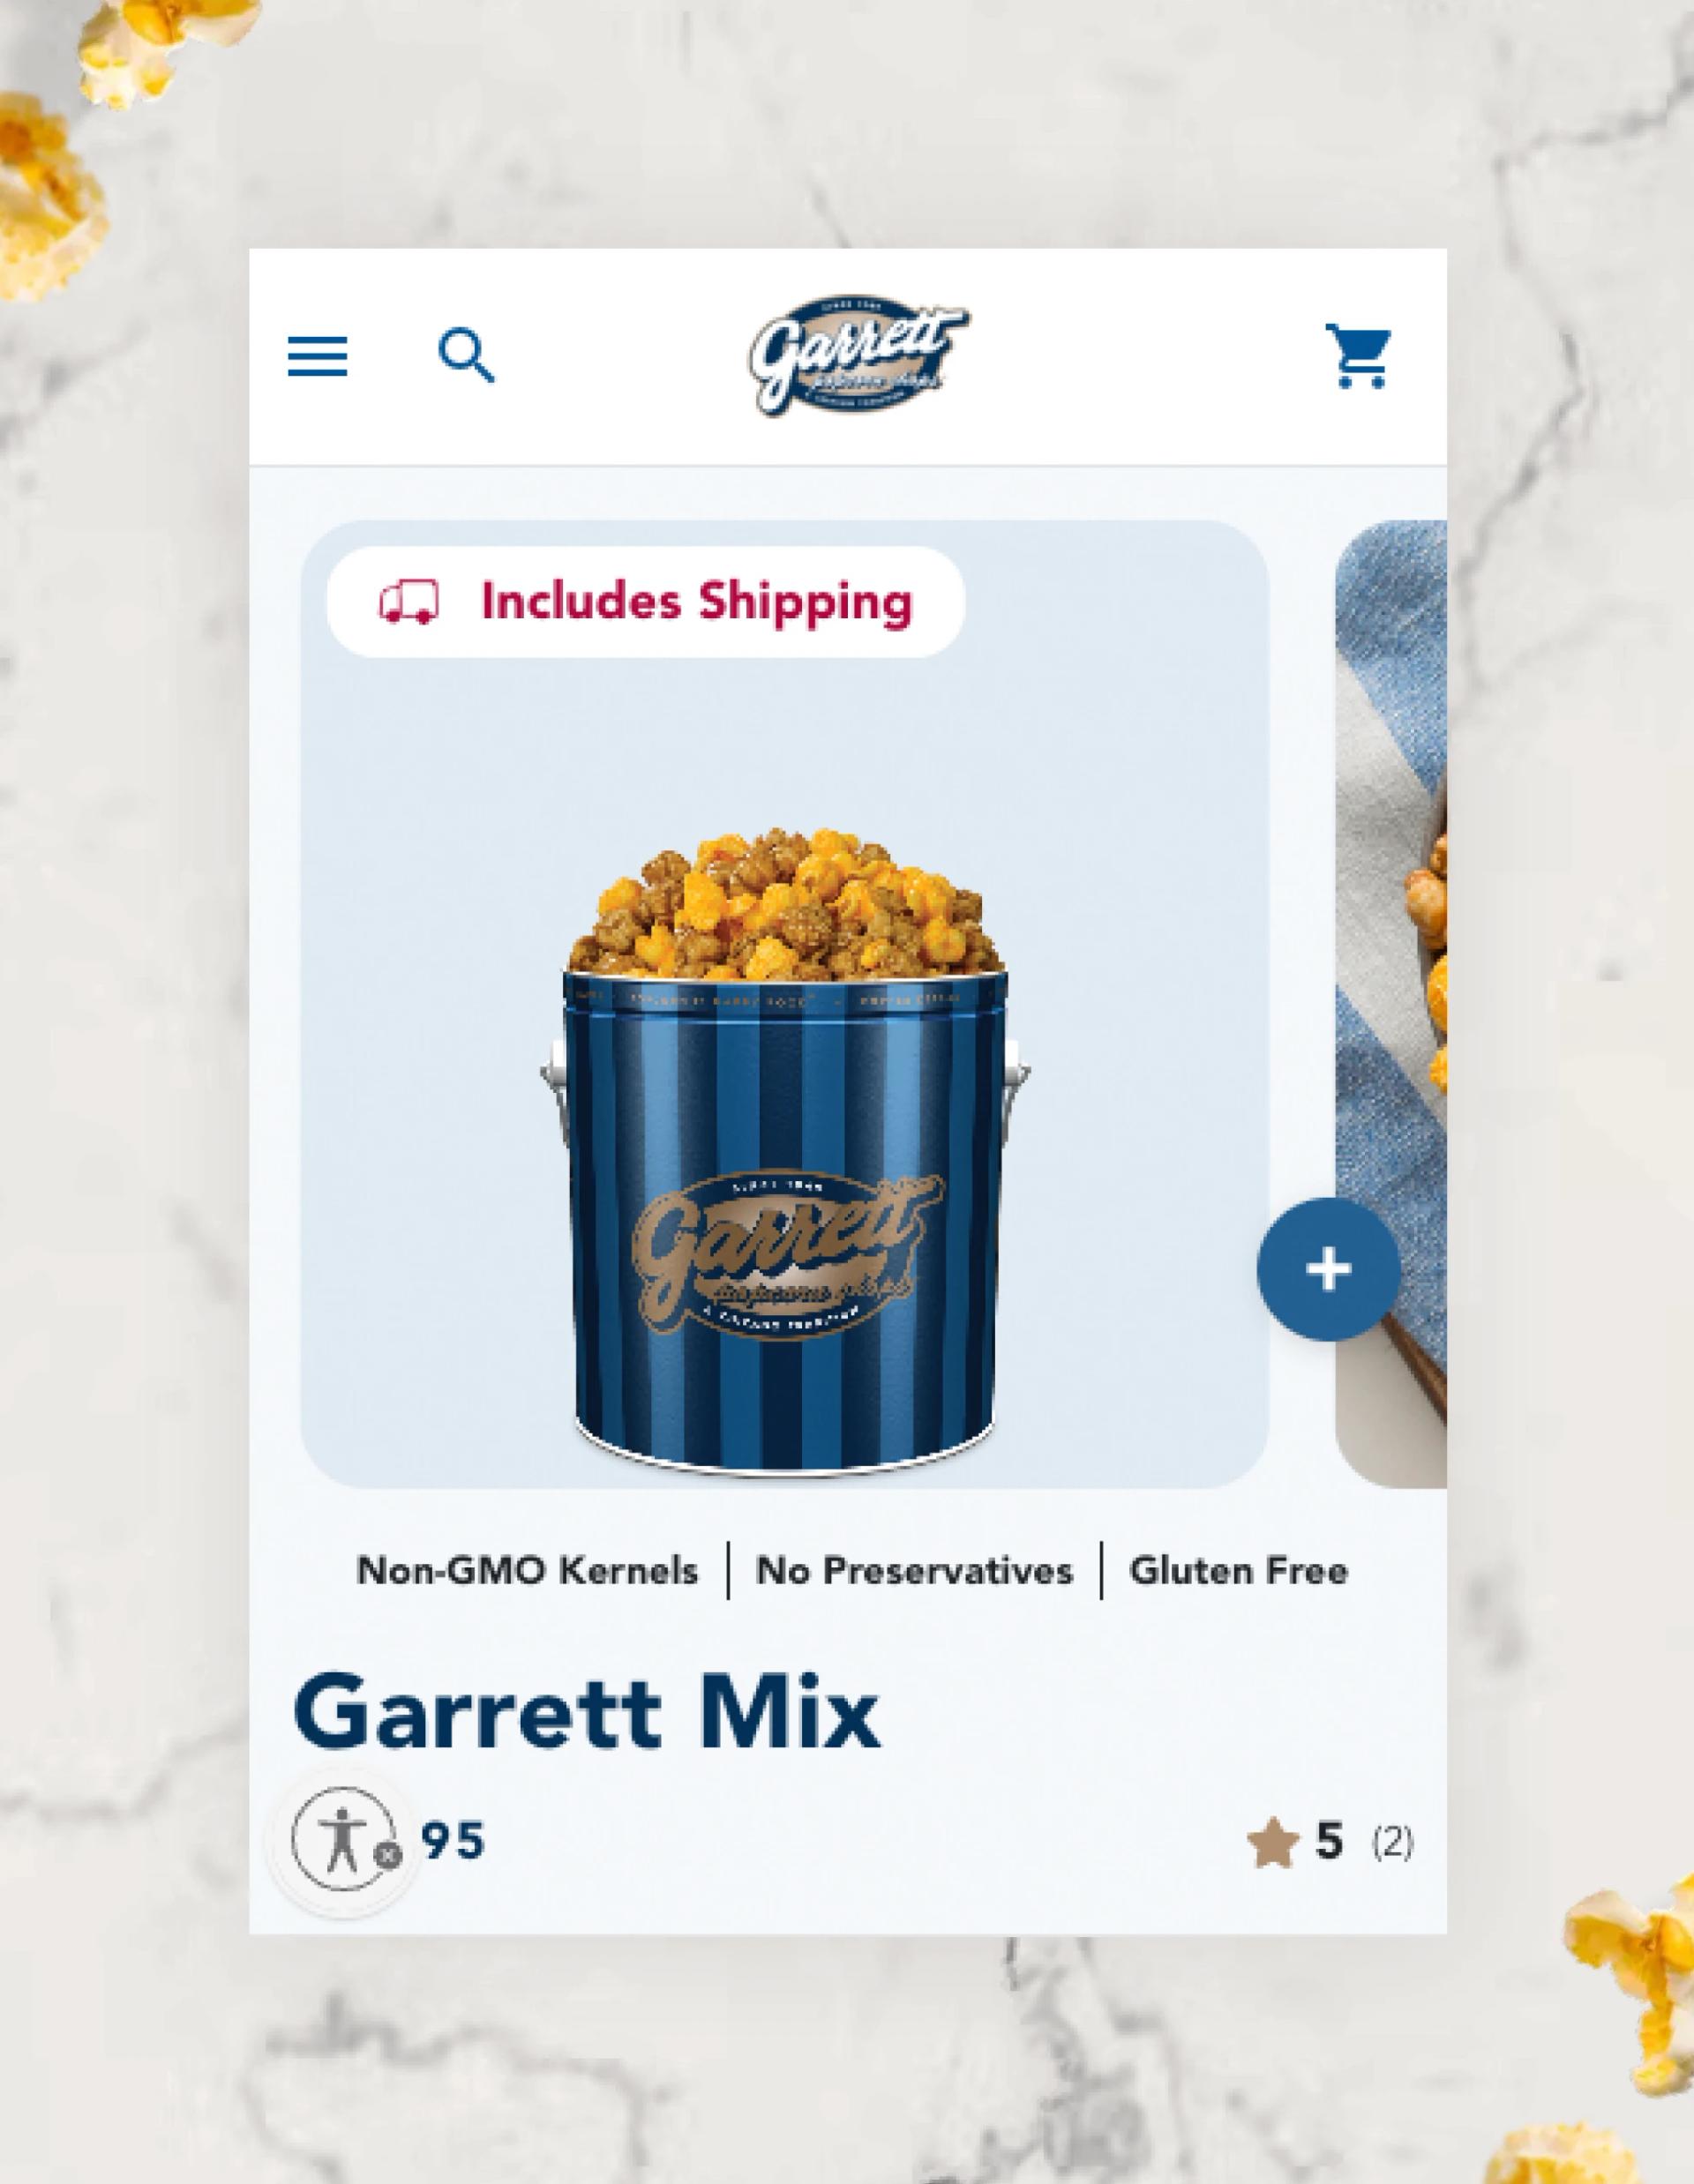 Garrett Popcorn website mobile